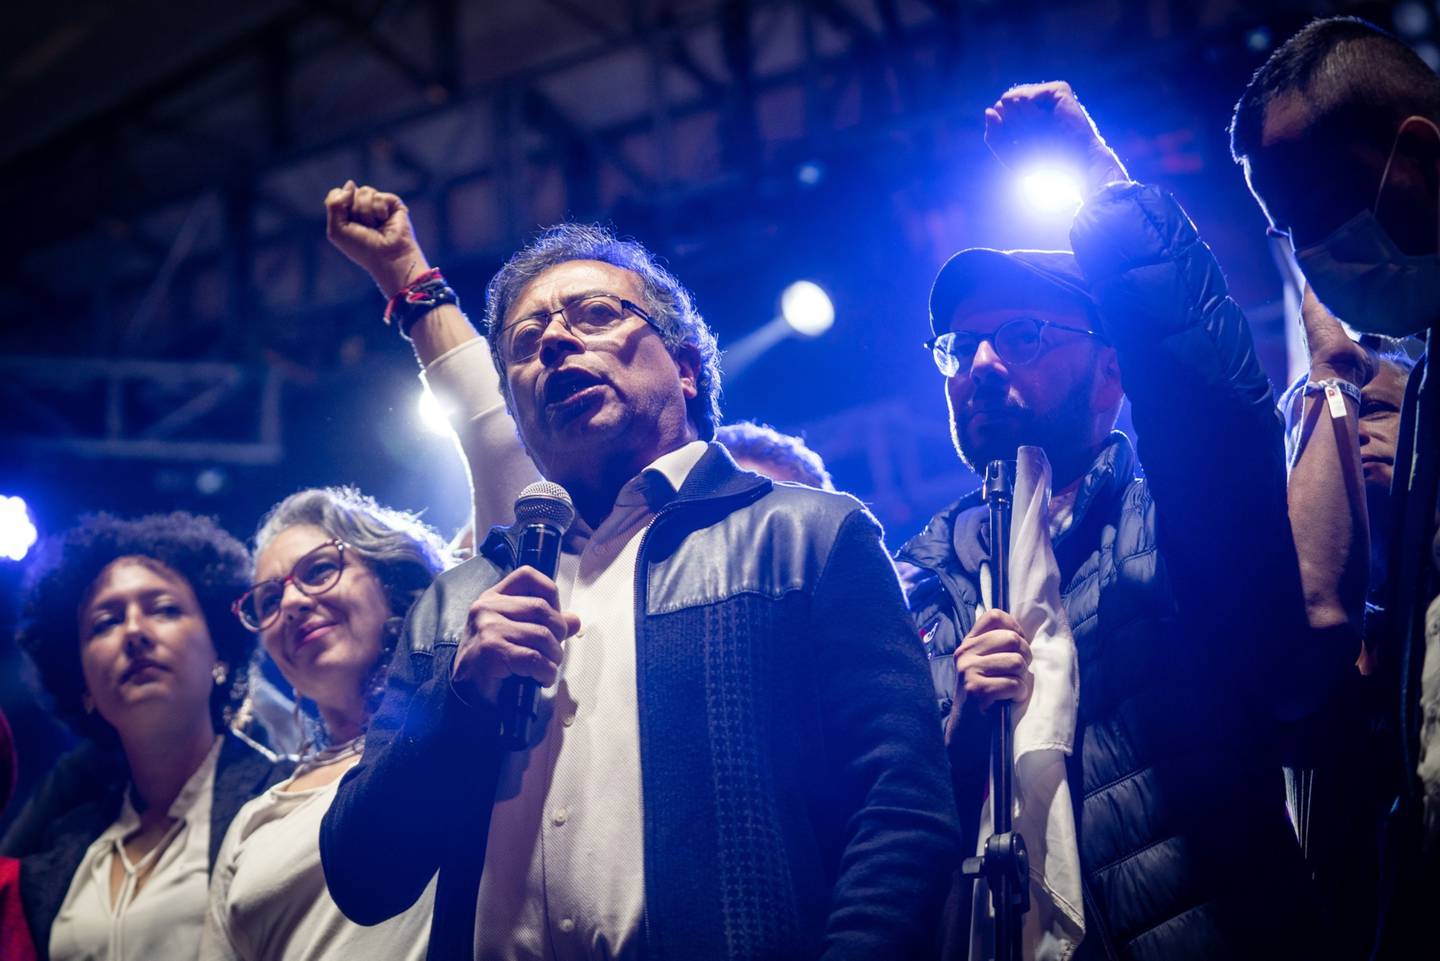 Gustavo Petro, candidato a la presidencia de Colombia, ha adoptado una postura favorable al clima en su campaña electoral. Fotógrafo: Nathalia Angarita/Bloombergdfd